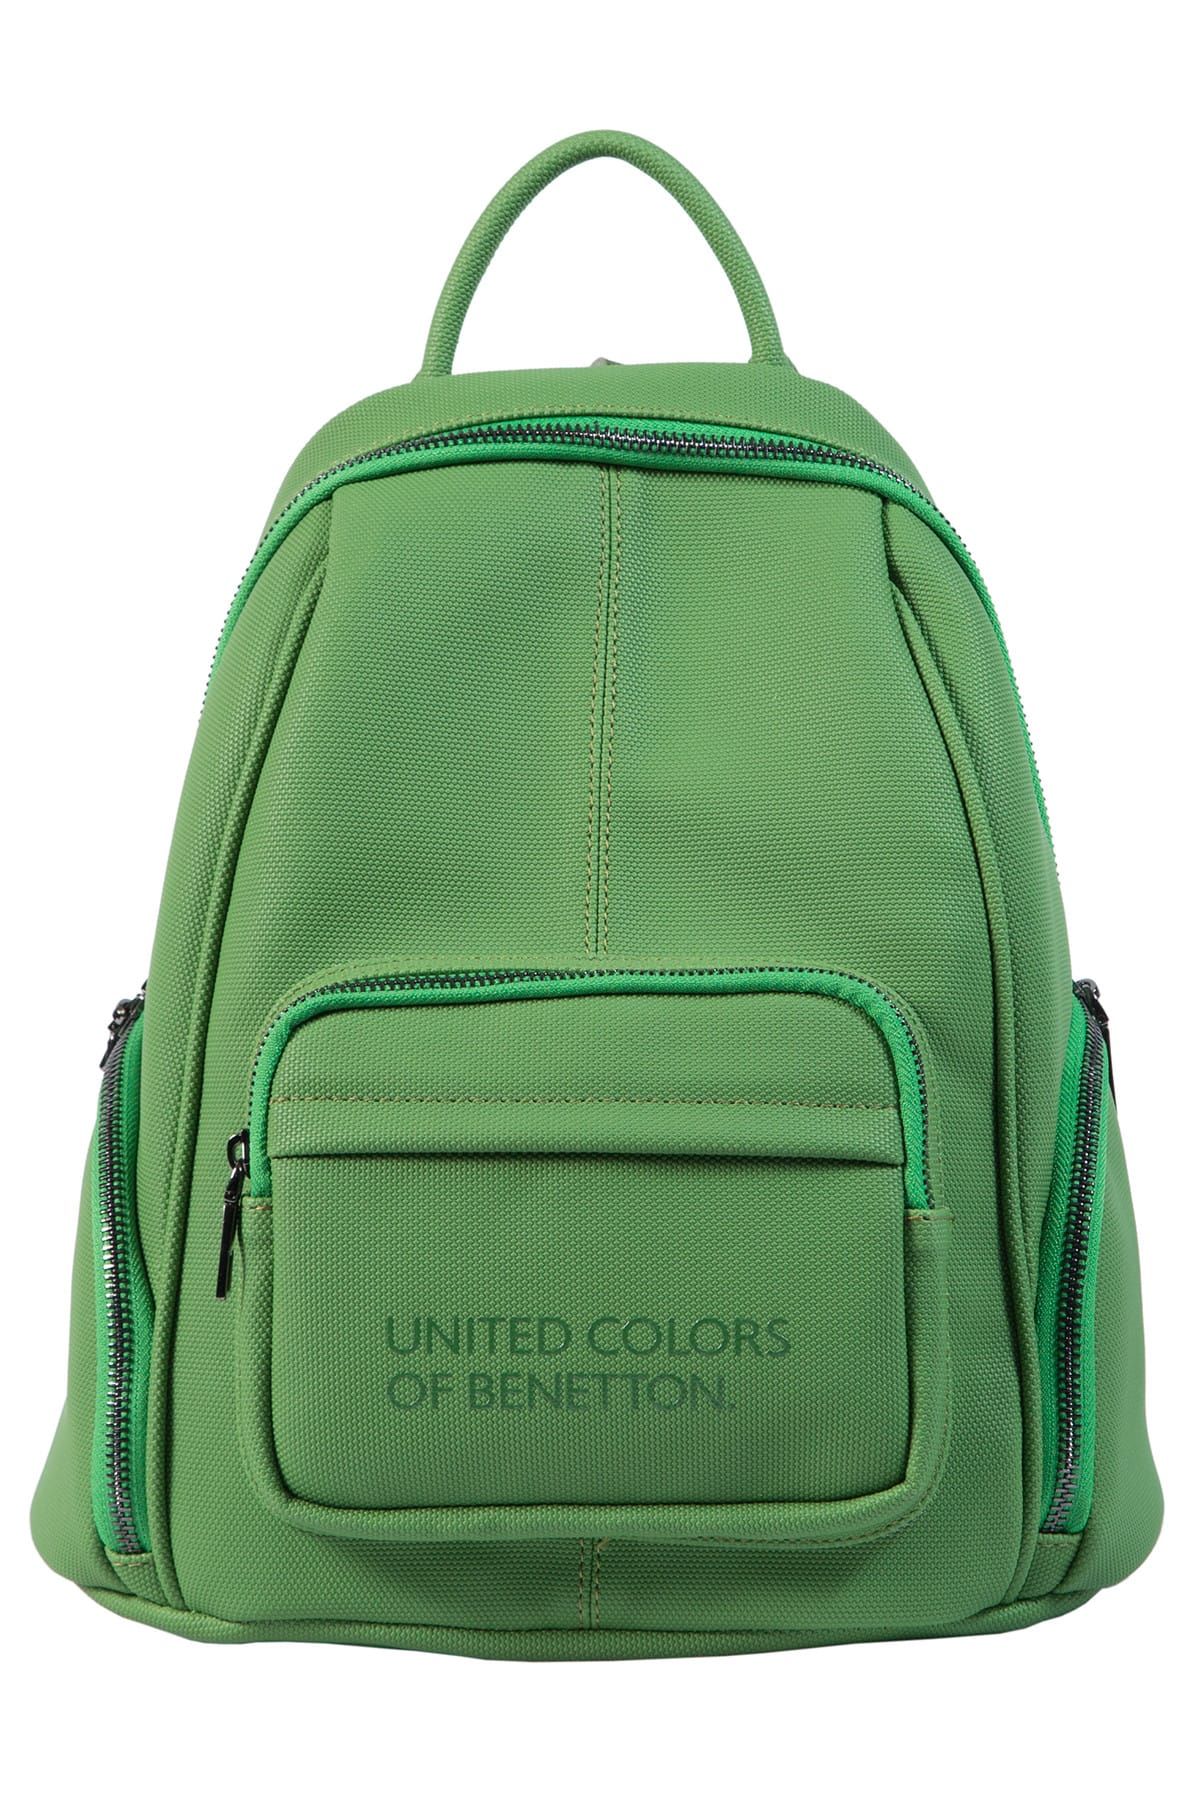 United Colors of Benetton Yeşil Kadın Sırt Çantası BNT82